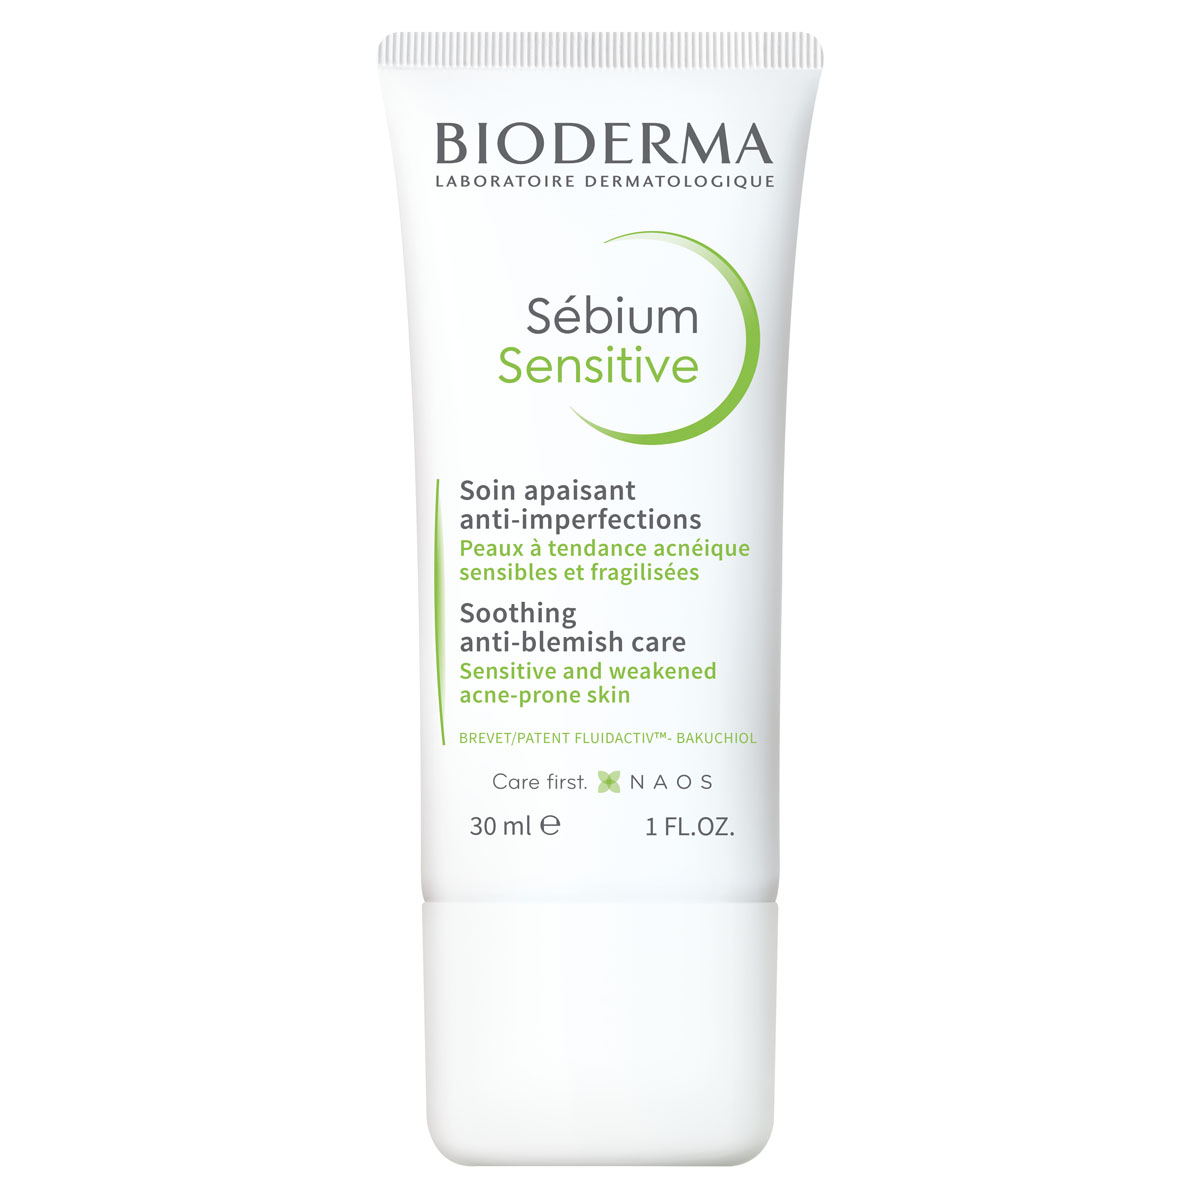 Купить Bioderma Увлажняющий успокаивающий крем для проблемной кожи Sensitive, 30 мл (Bioderma, Sebium), Франция